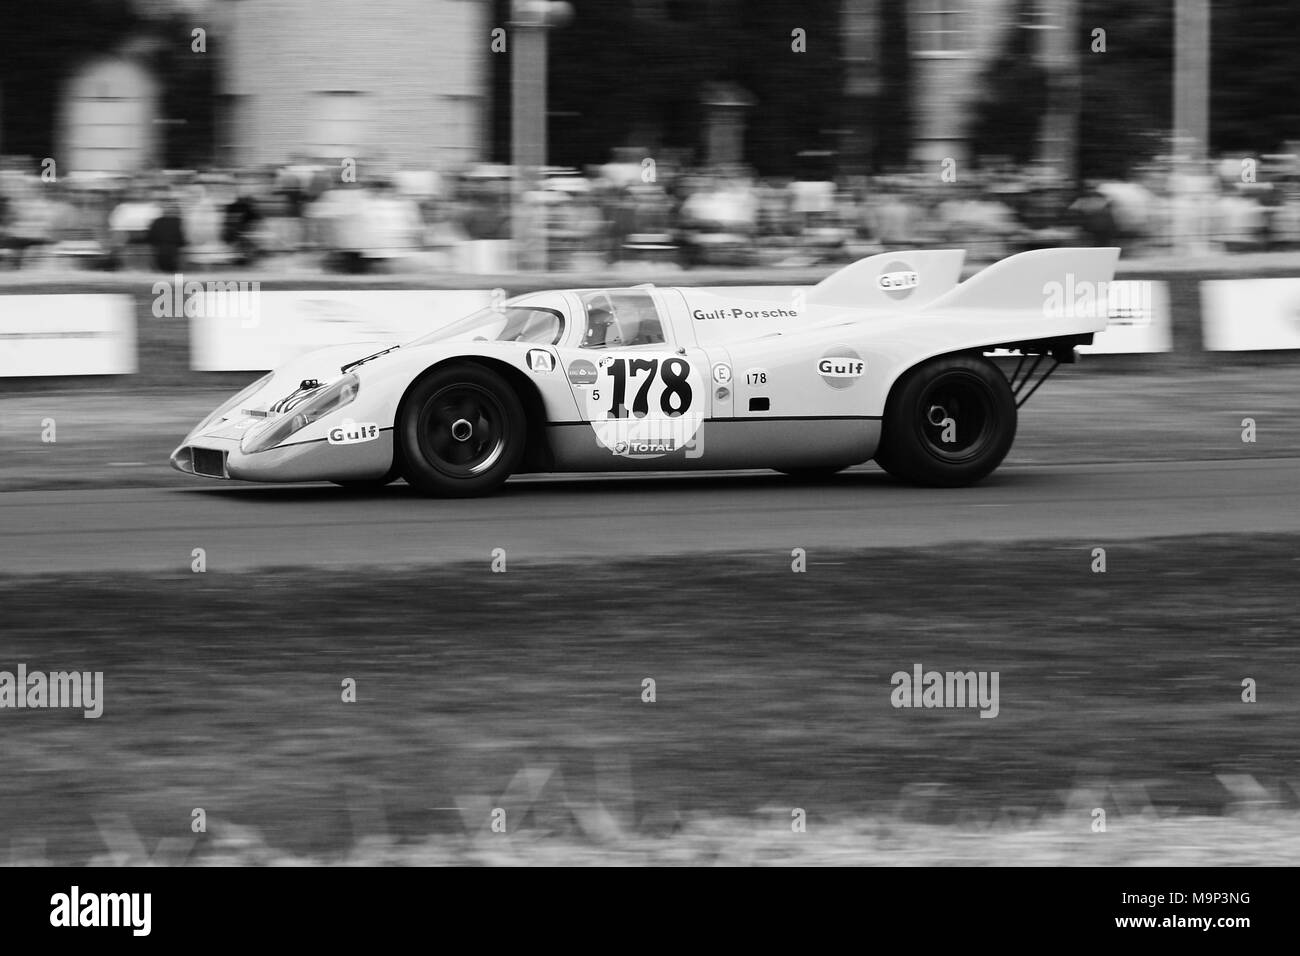 Golf Porsche 917 K (917 K). Chassis 917-026 racing in Goodwood. Porsche 917 Porsche gab ihre erste gewinnt bei 24 Stunden von Le Mans 1970 und 1971. Stockfoto